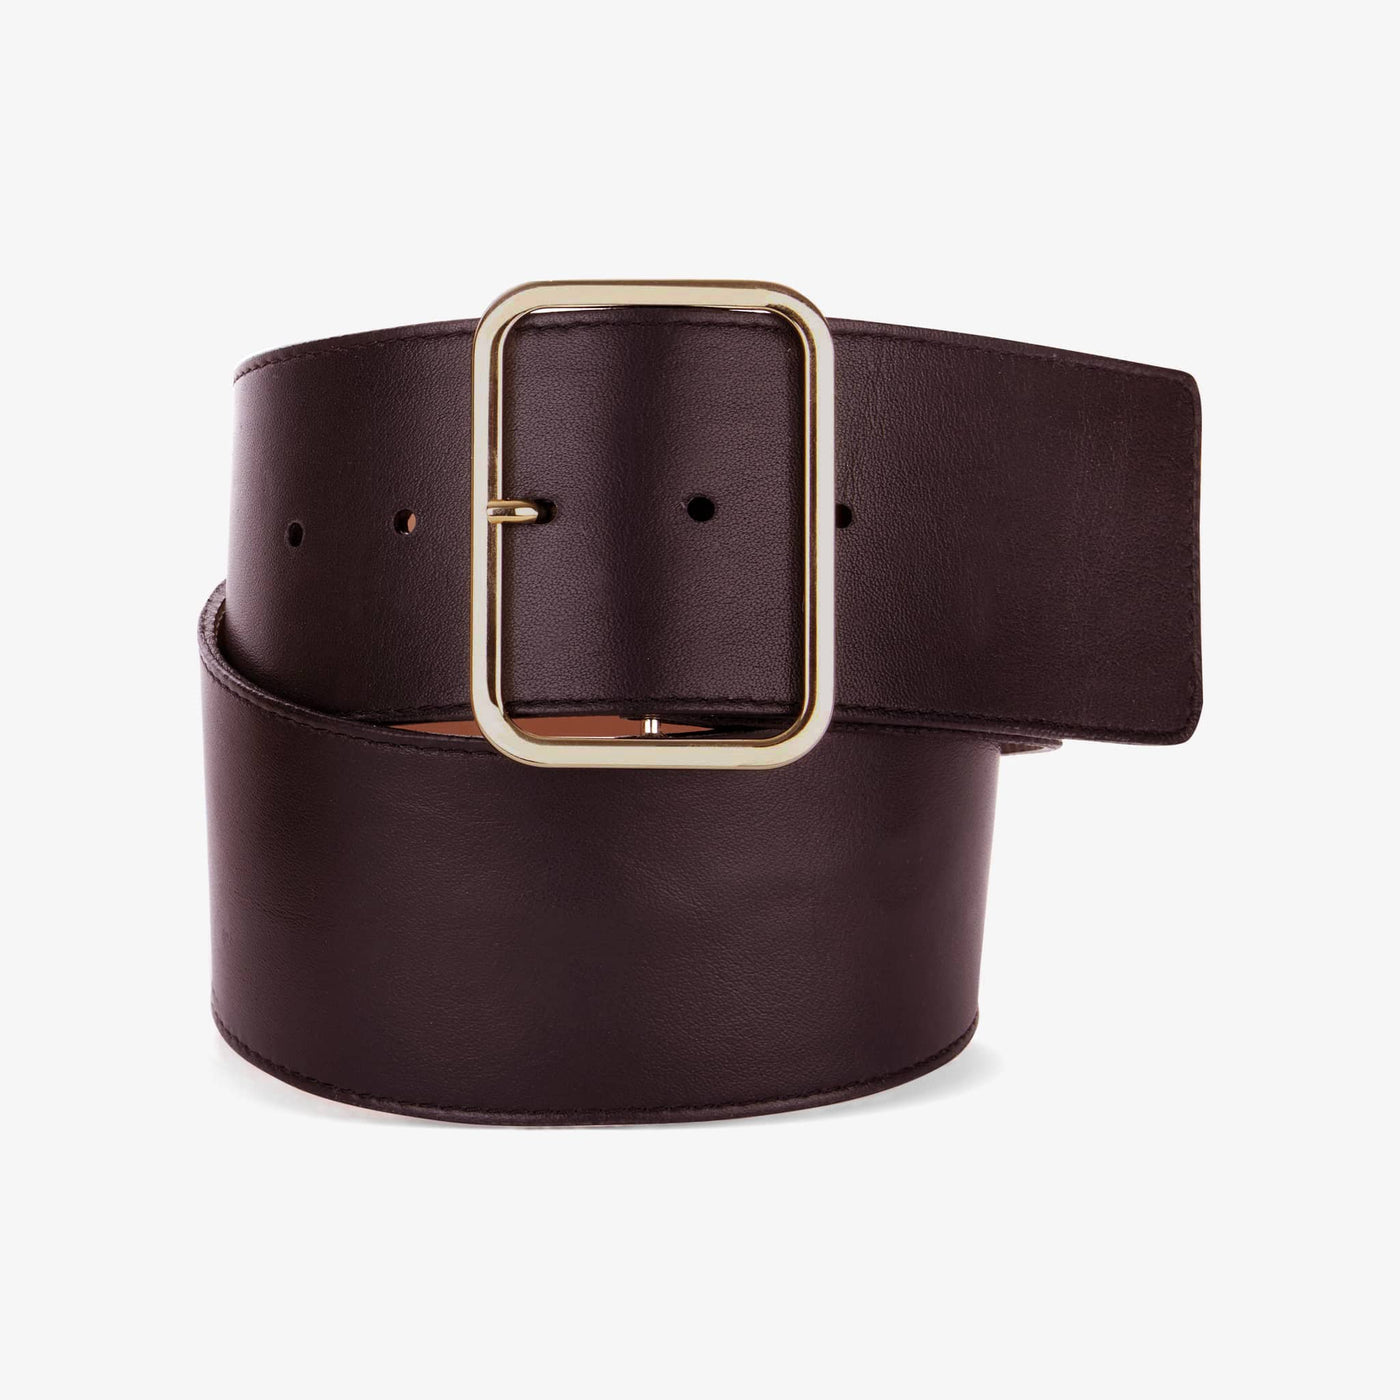 WIDE clear gold buckle plus size belt - Meri's Boutique